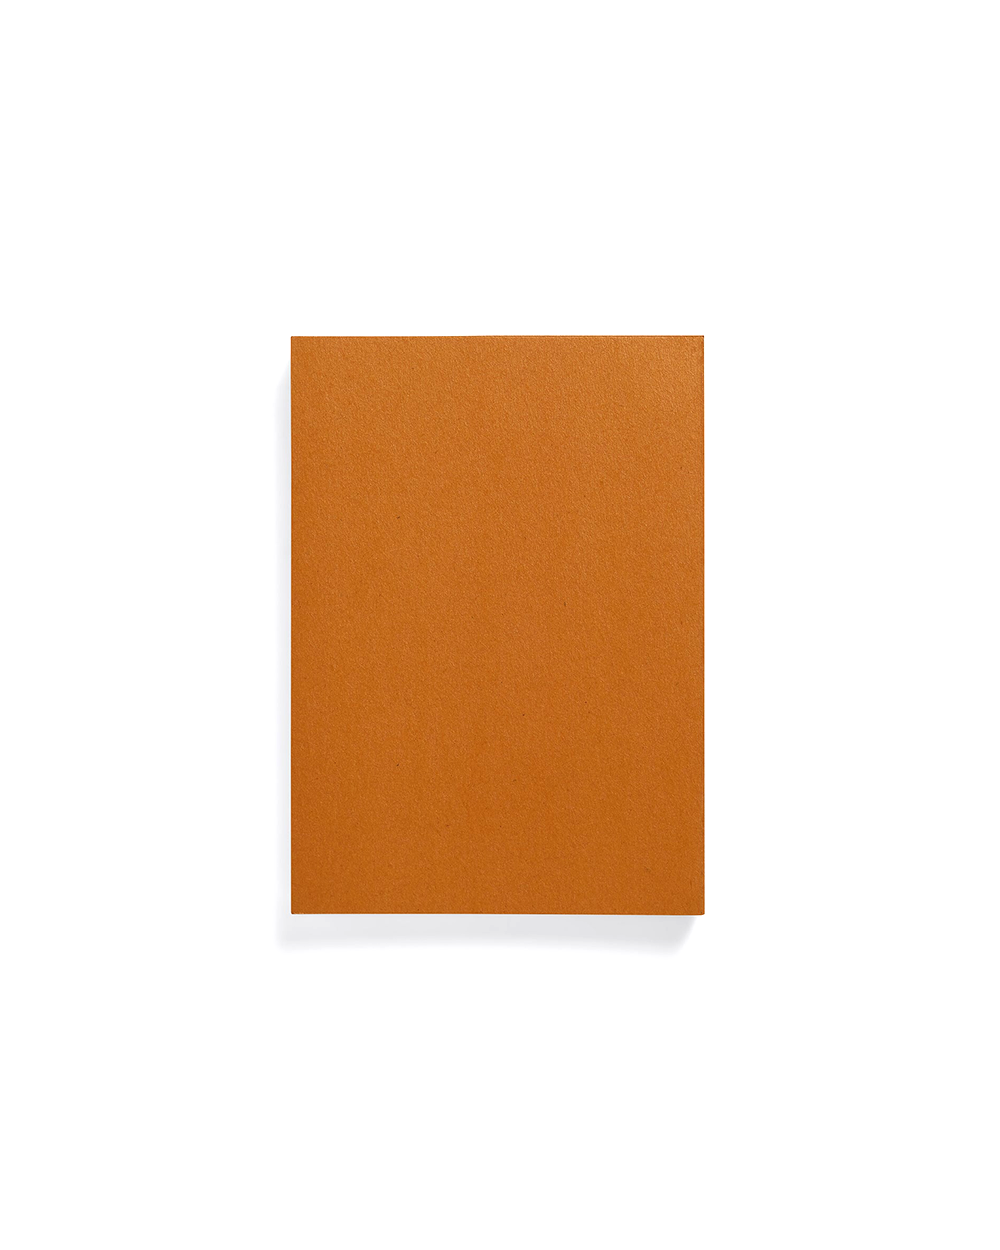 4mm Dot Grid Notebook - Orange